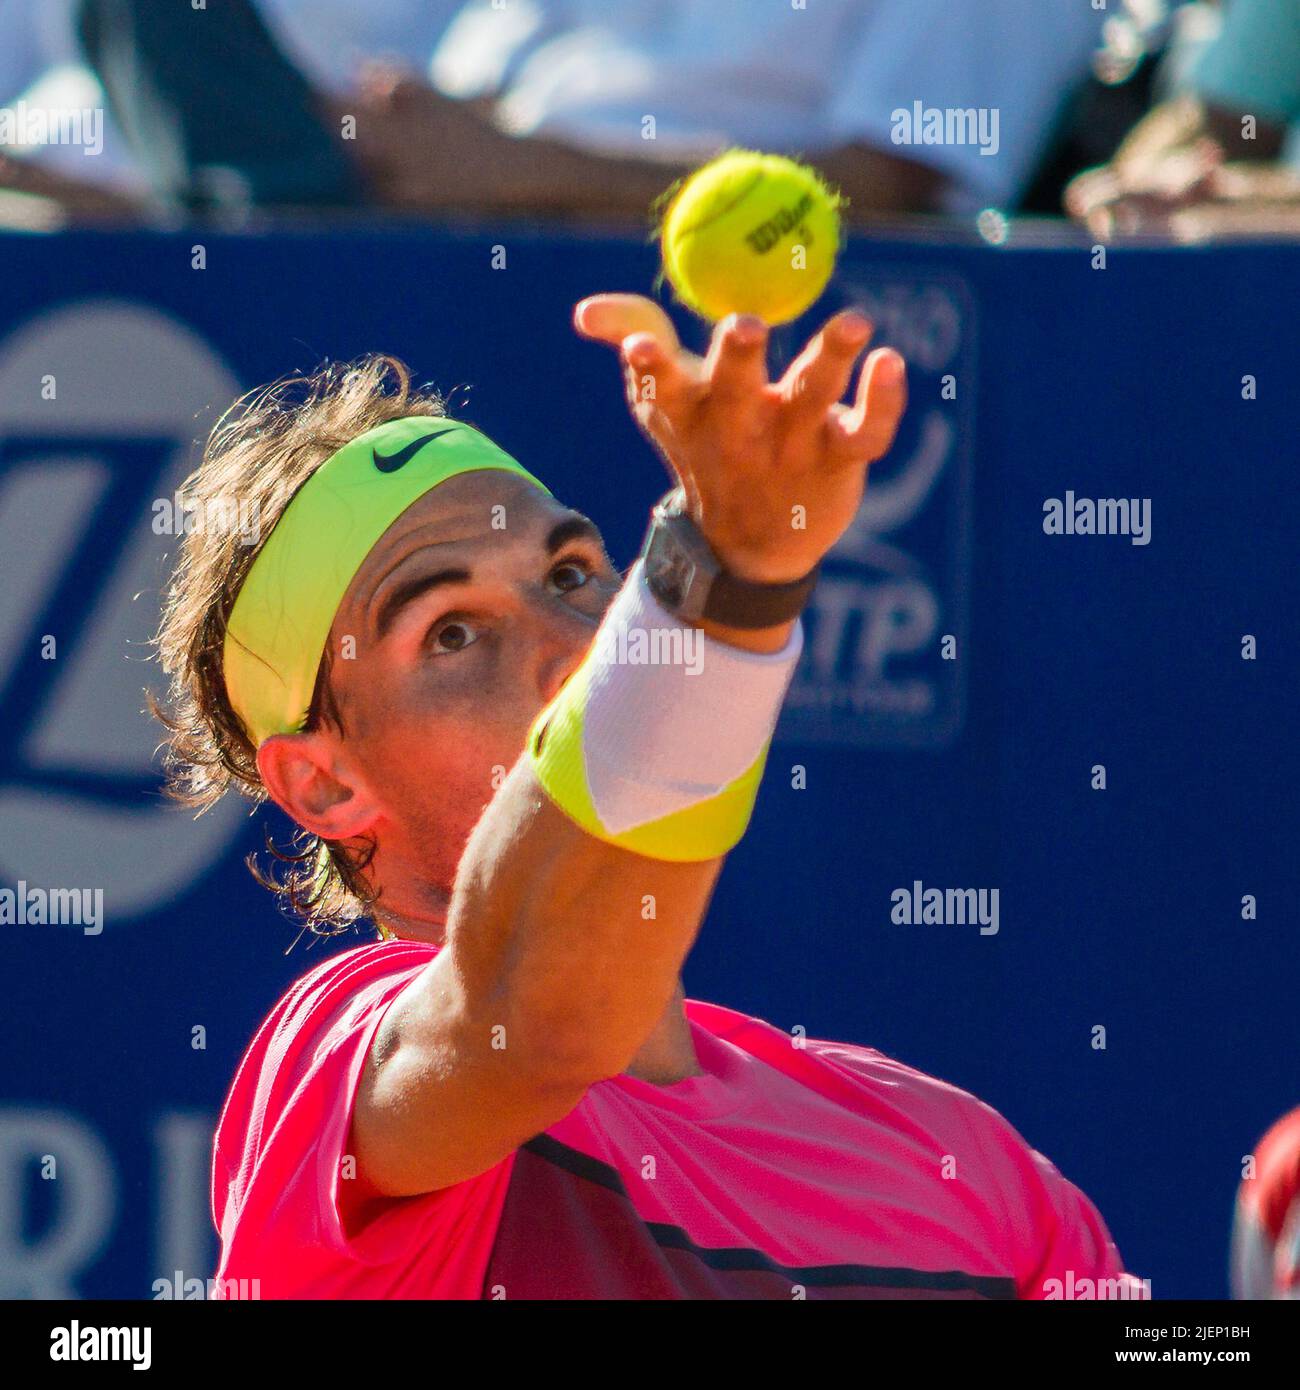 Rafael Nadal servant sur l'argile au Buenos Aires Lawn tennis. Banque D'Images